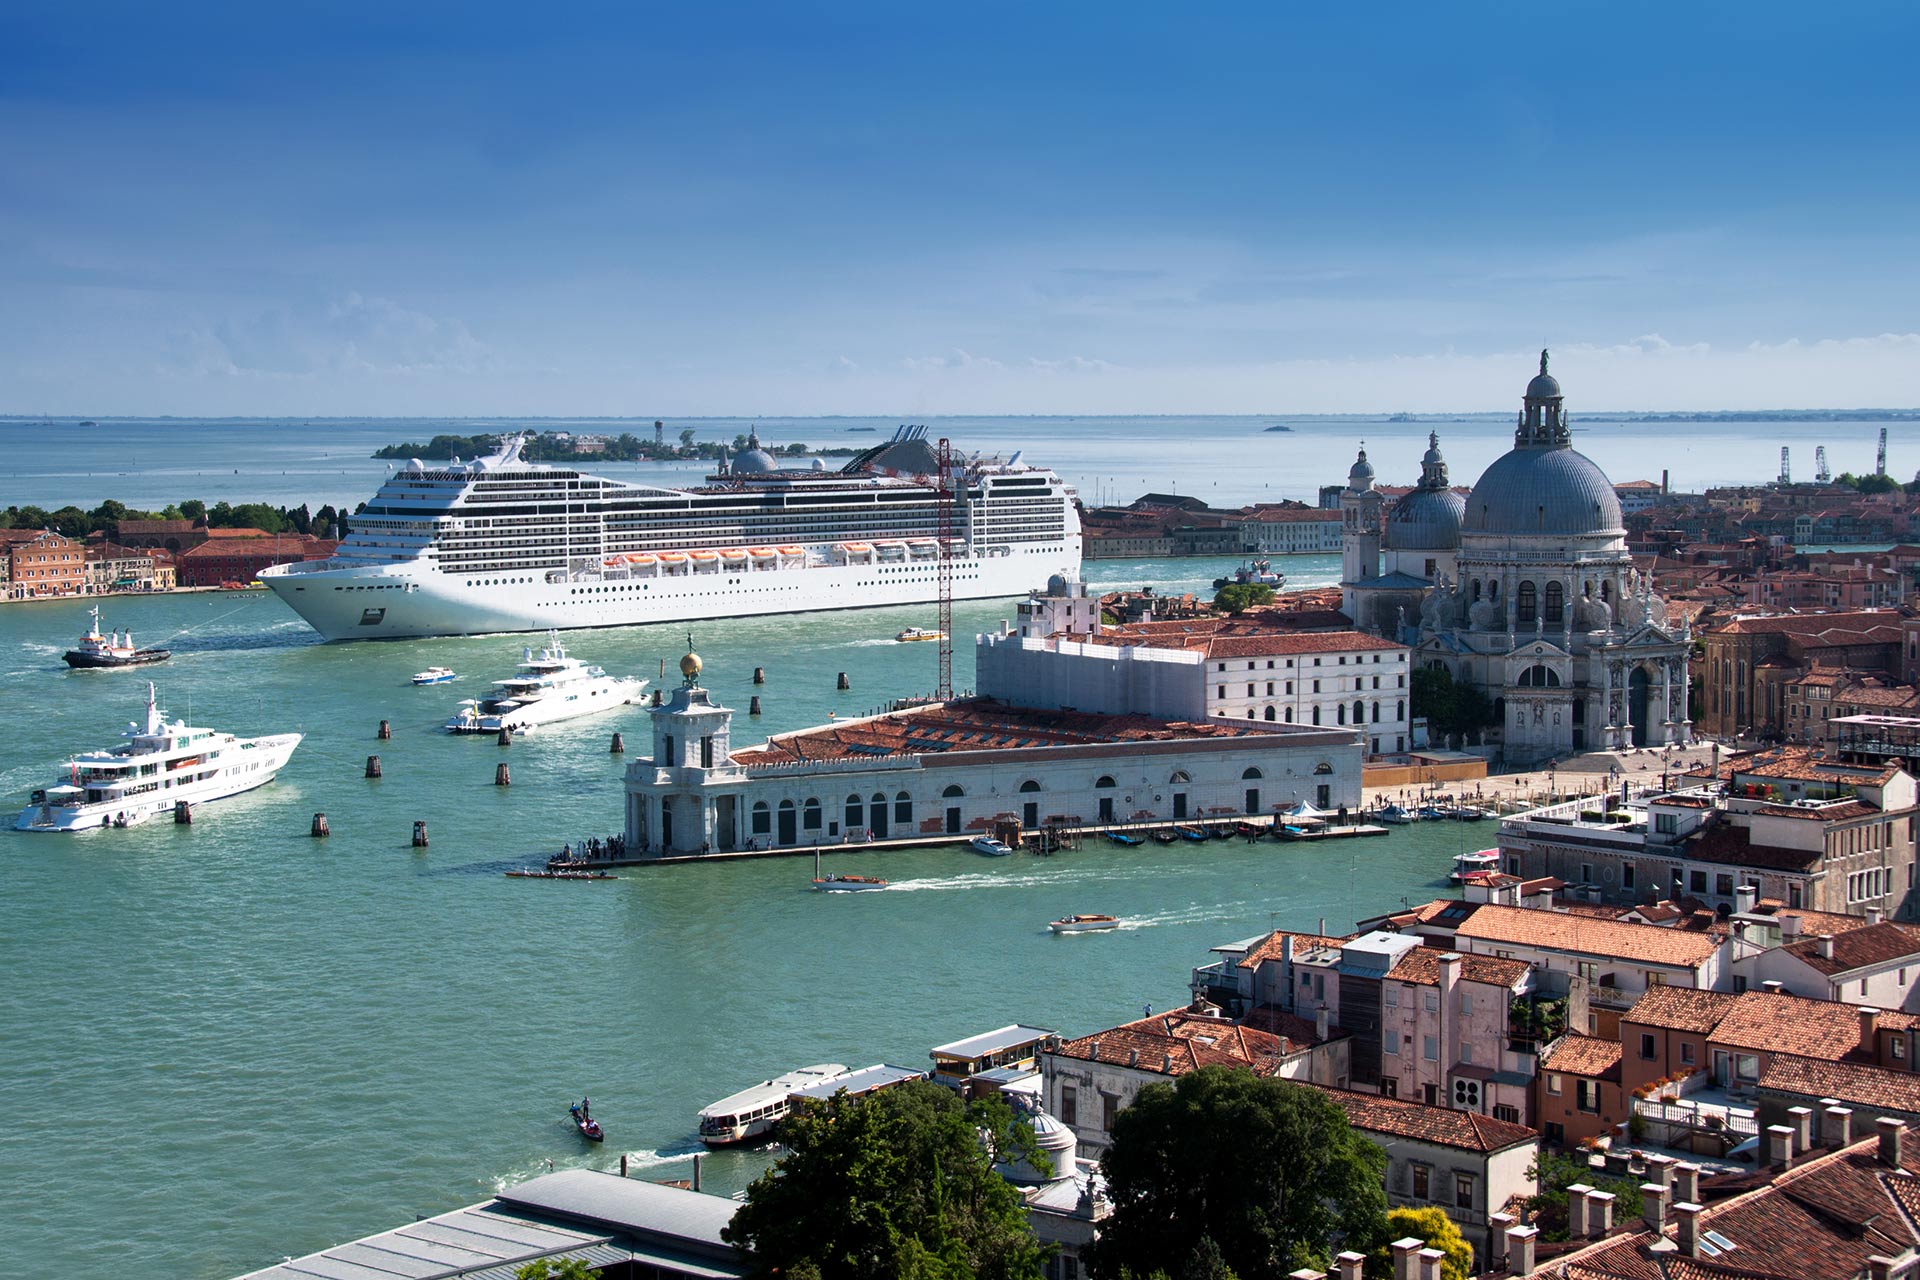 A cruise ship in Venice, Italy